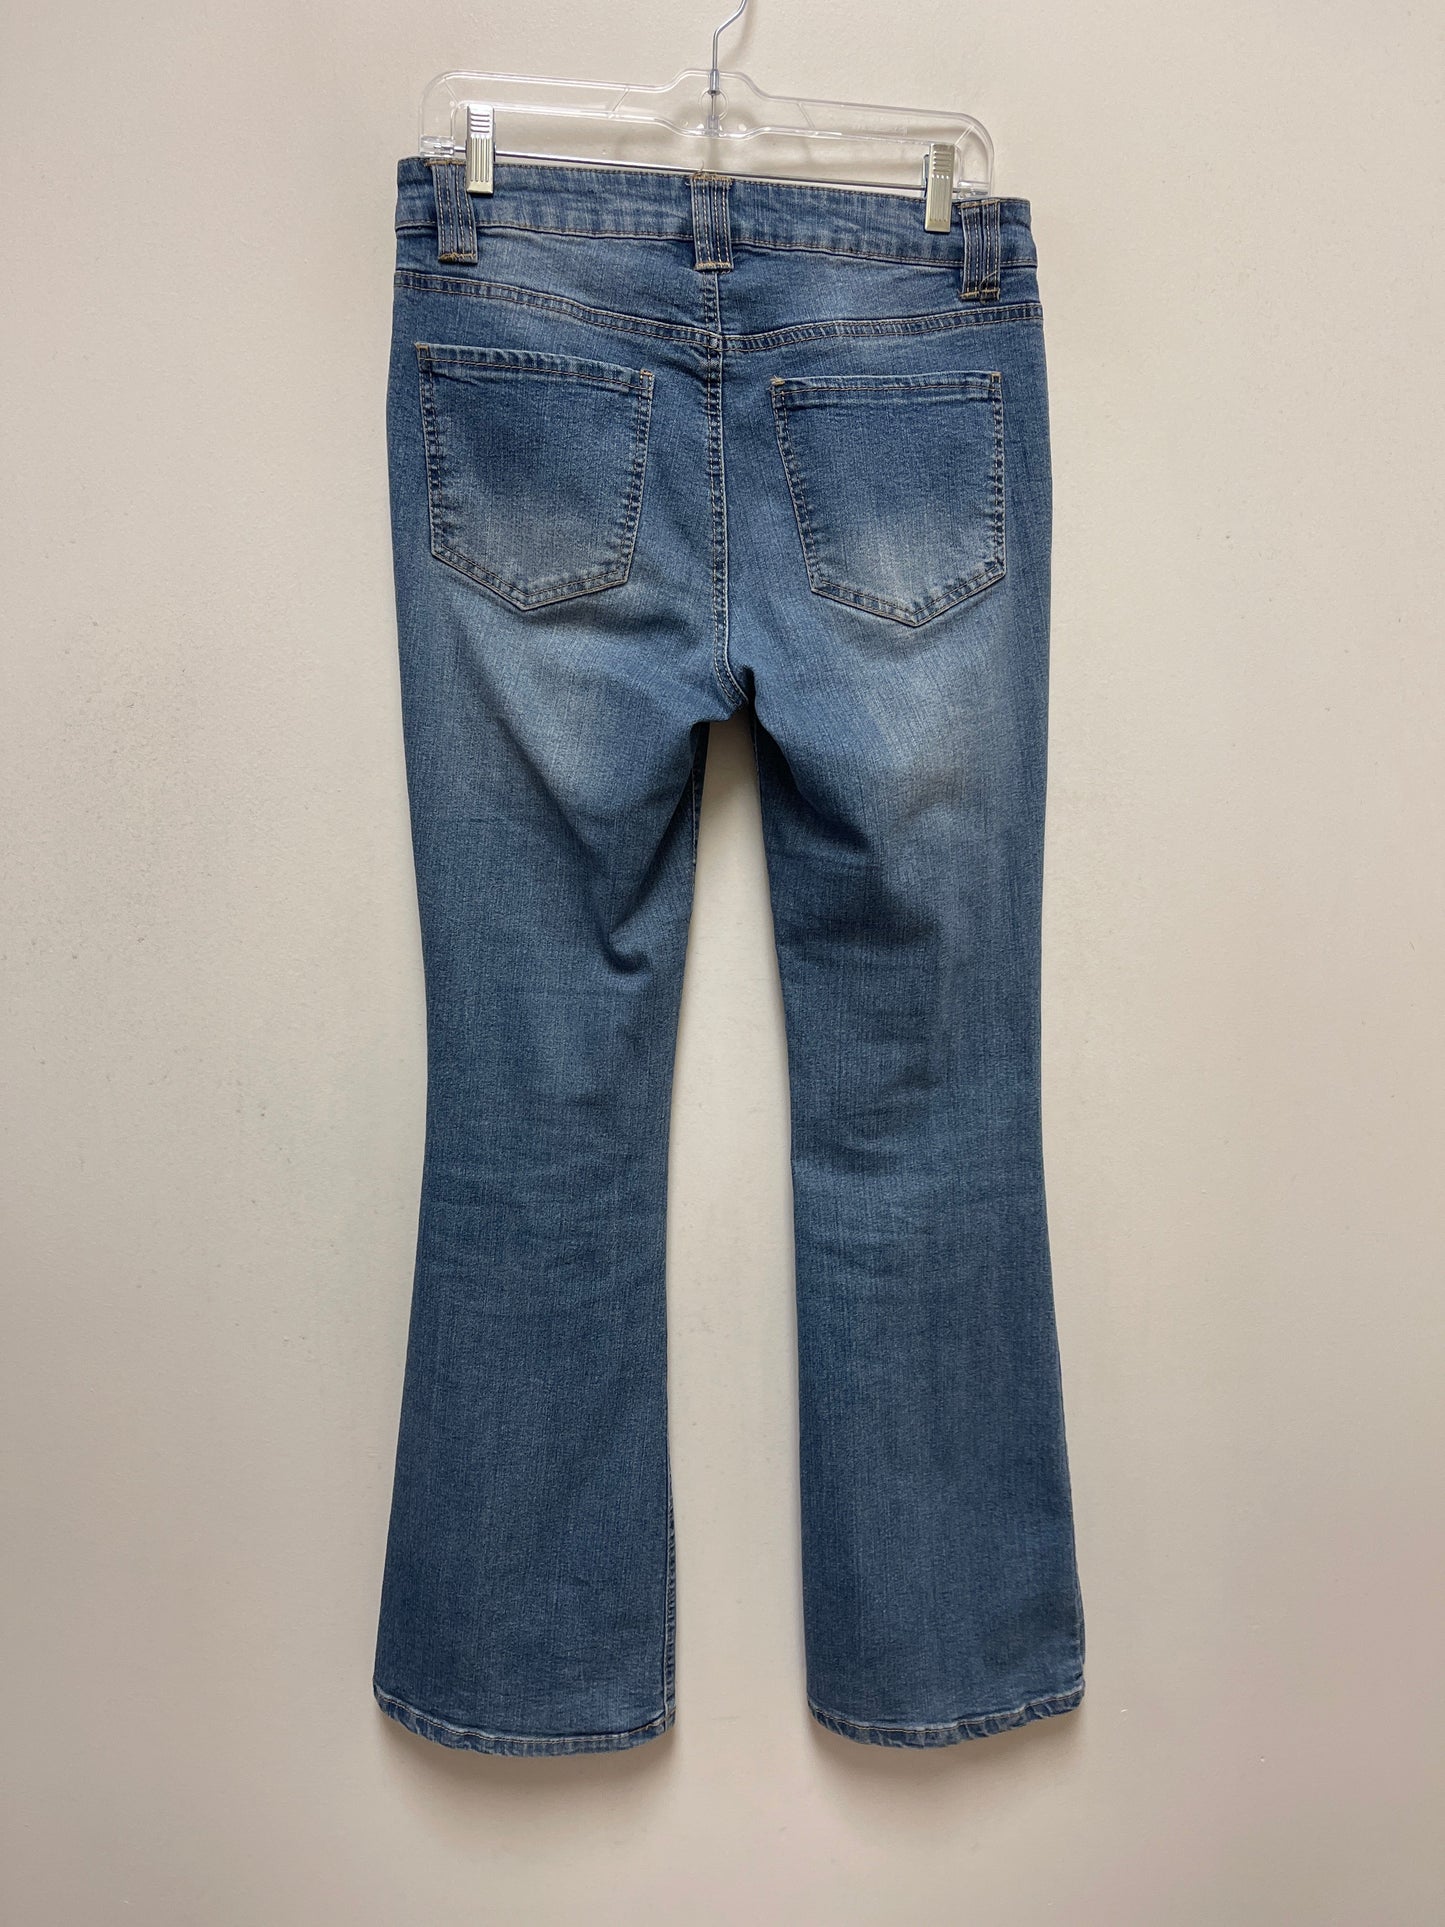 Blue Denim Jeans Straight D Jeans, Size 8